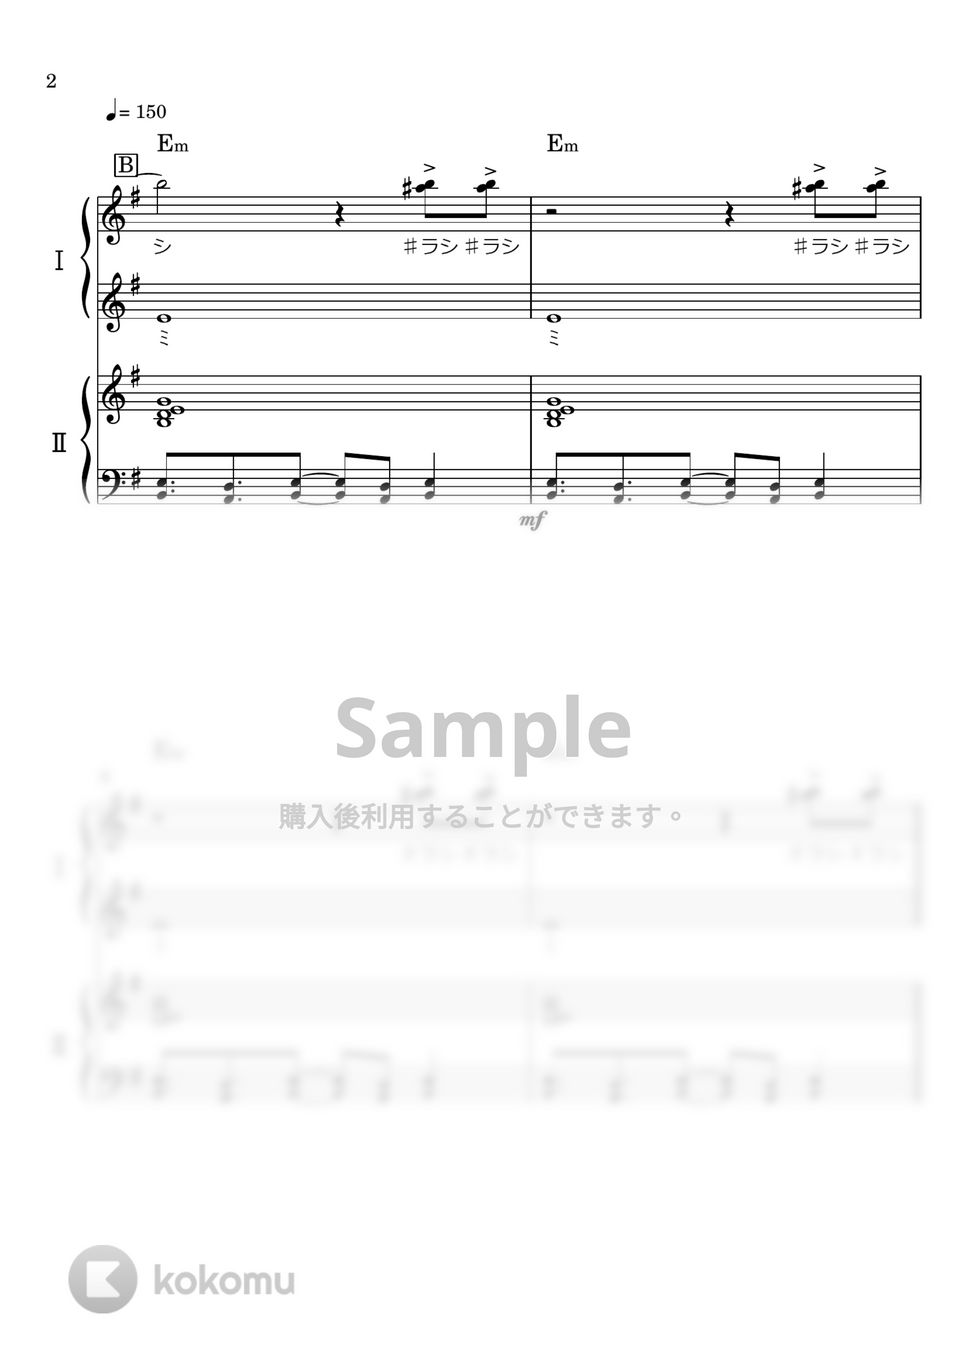 LiSA - 紅蓮華 (ピアノ連弾) by わたなべももこ